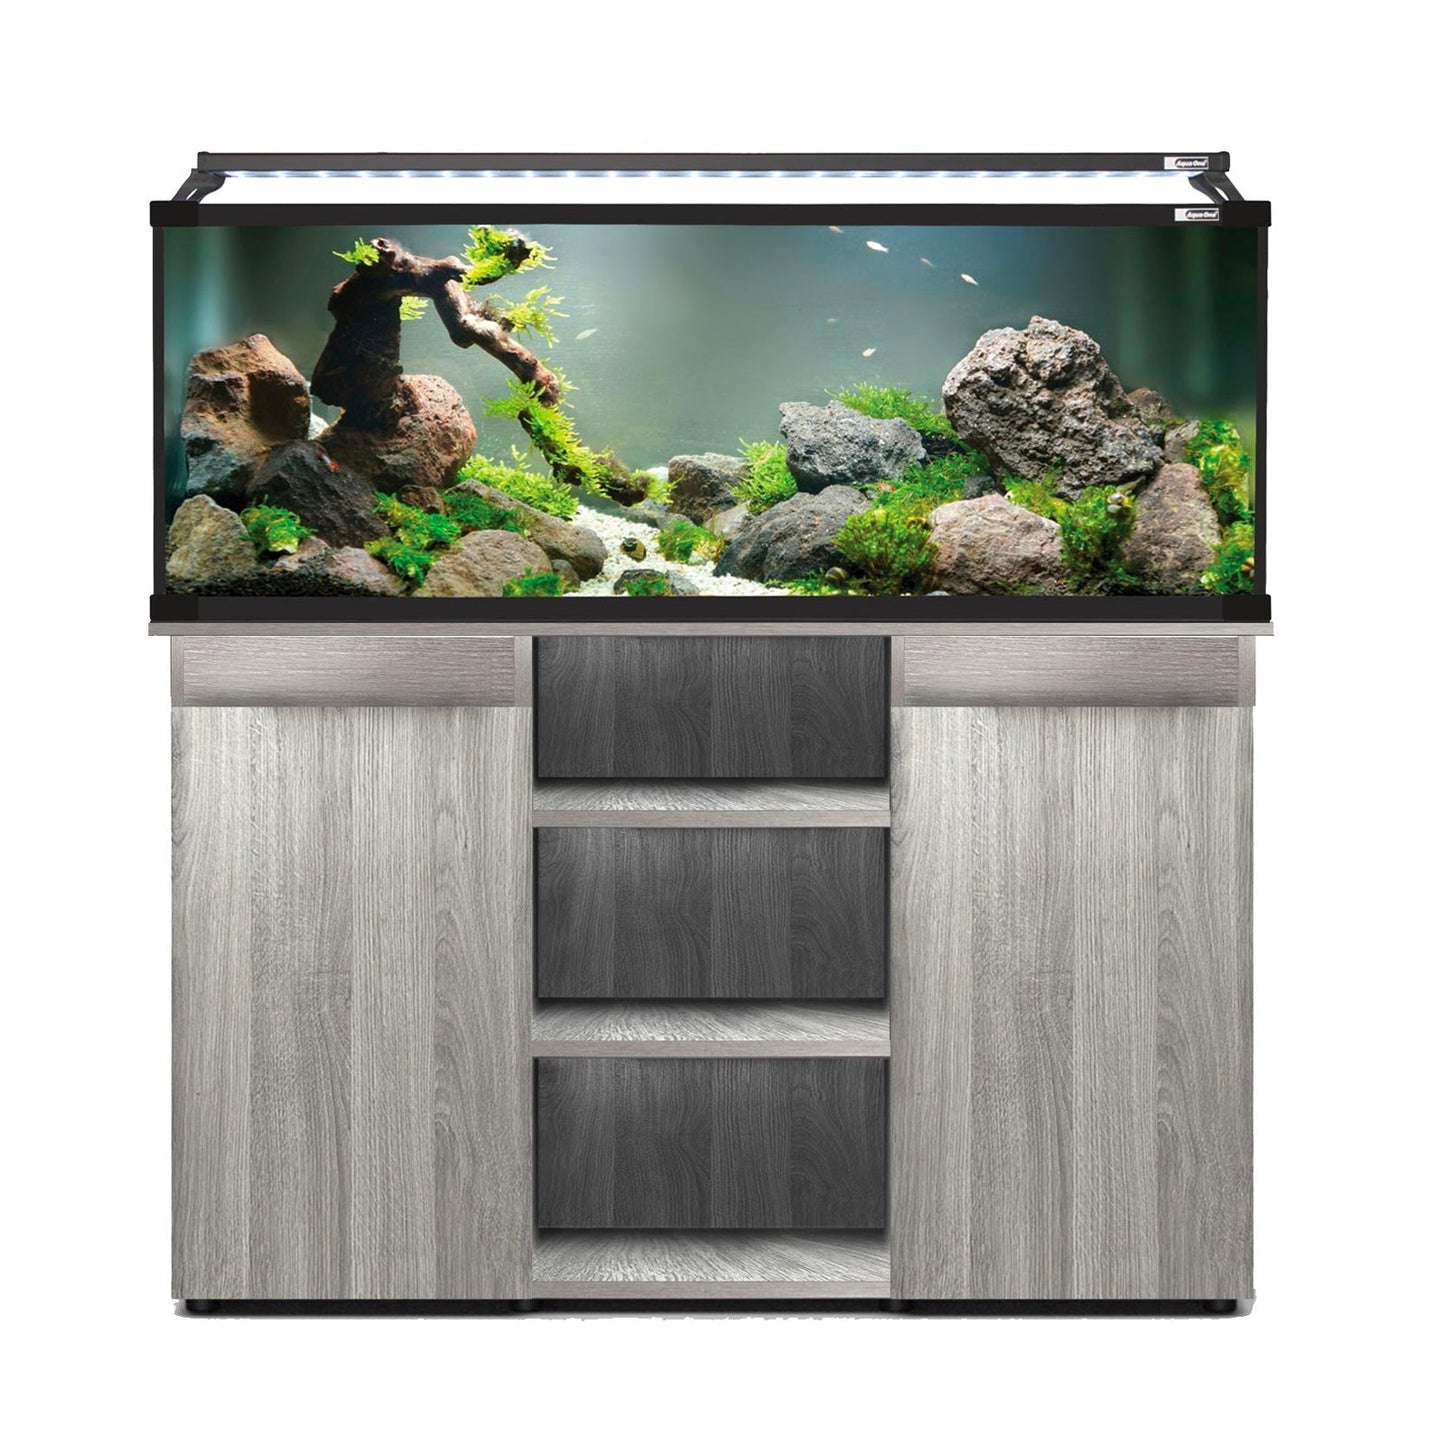 Aqua One Horizon 182 Aquarium and Urban Grey Cabinet - Charterhouse Aquatics